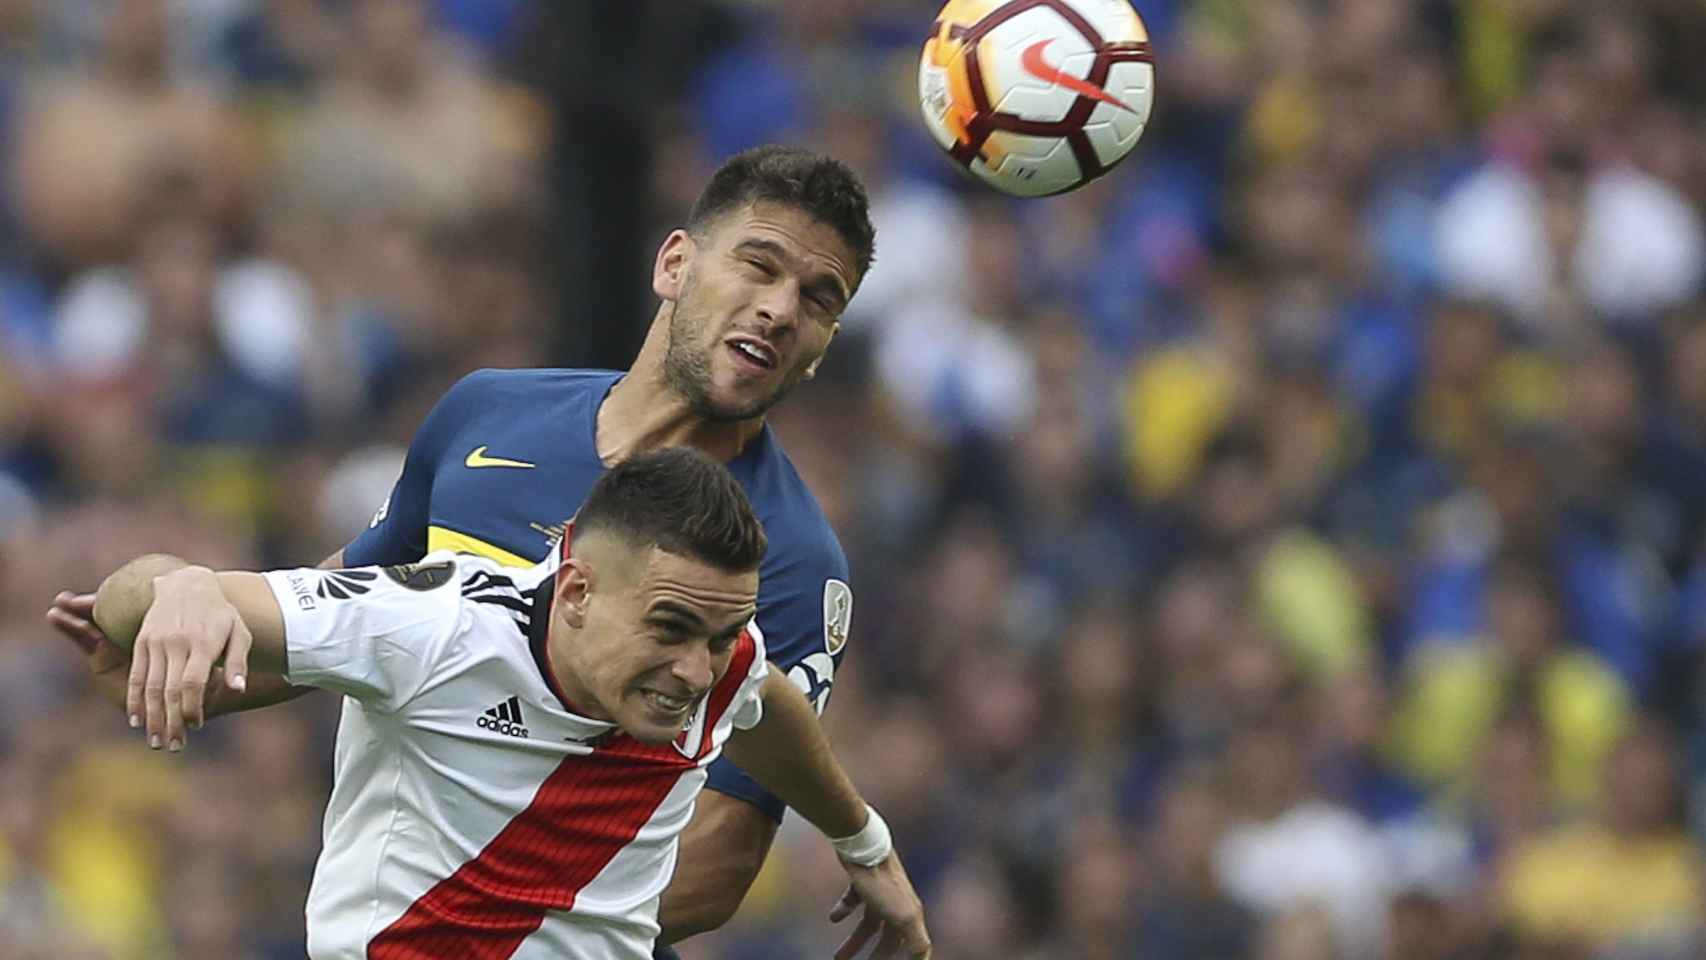 El jugador de Boca Juniors Lisandro Magallán disputa el balón con Santos Borré de River Plate,